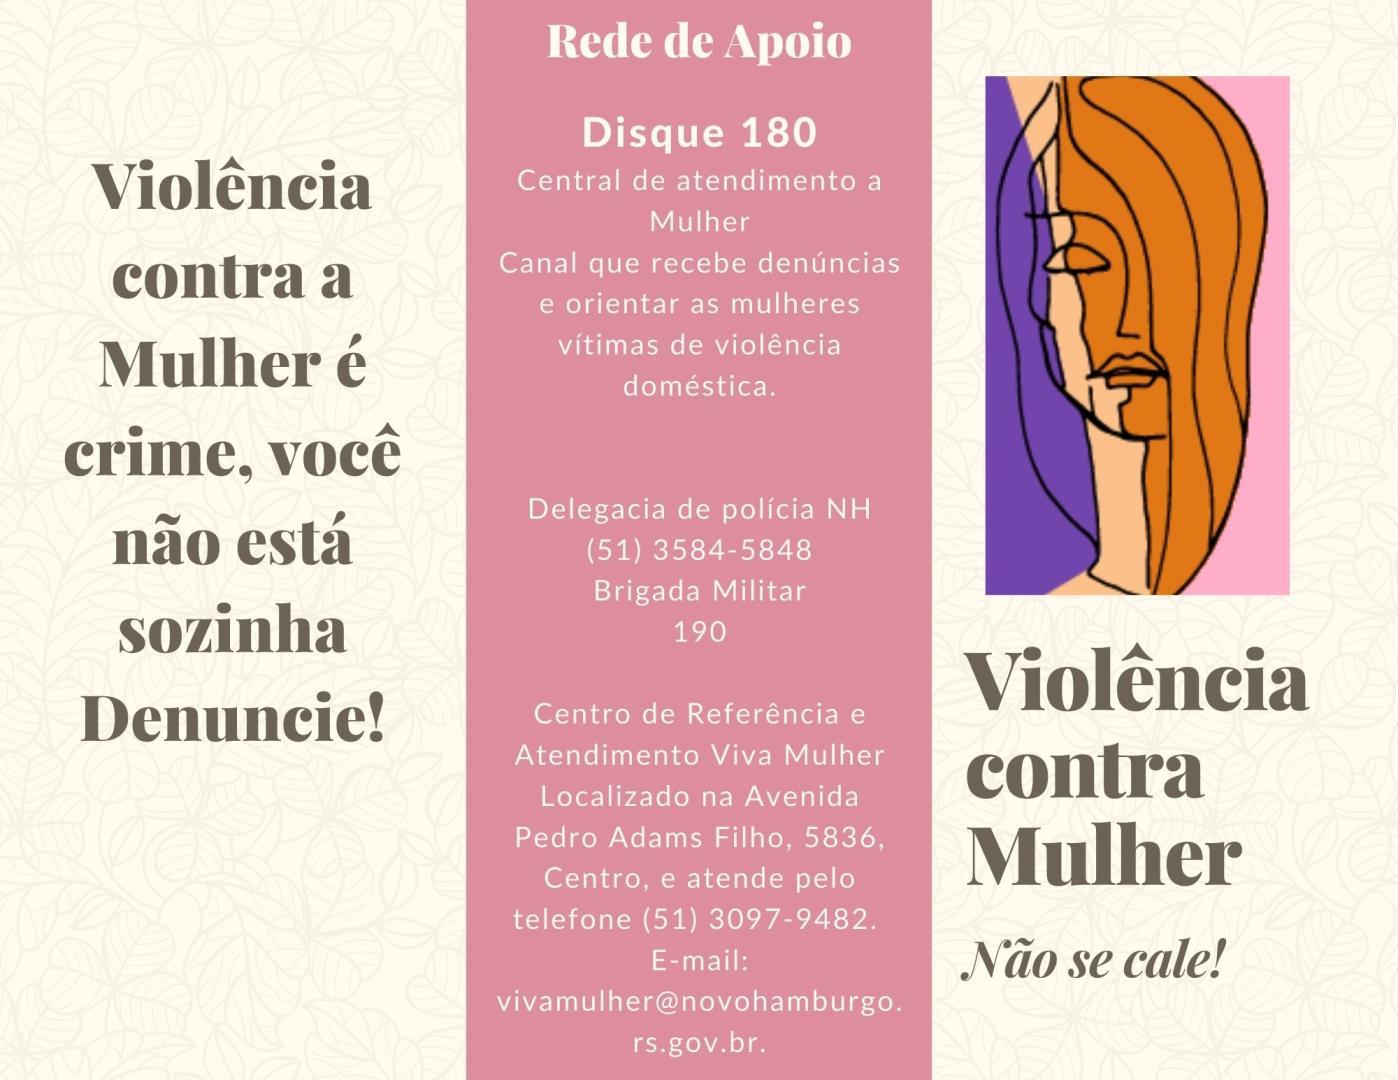 Curso de Psicologia promove projeto de extensão “Prevenção à violência contra a mulher e no namoro”